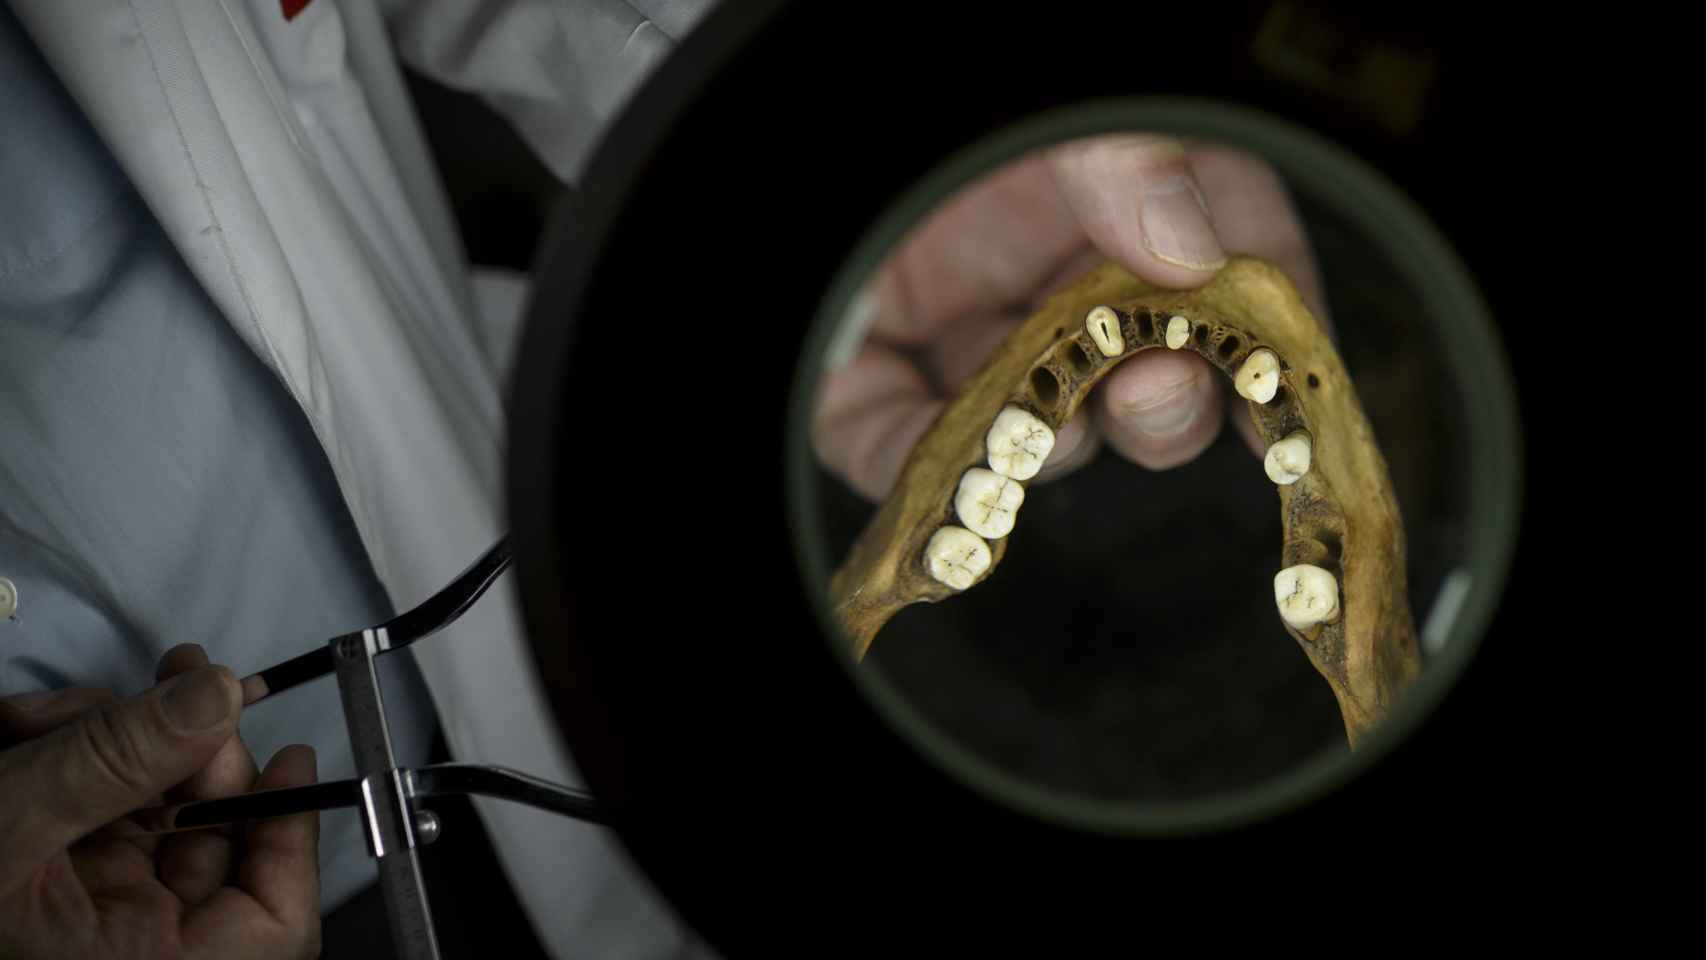 La dentadura también aporta detalles relevantes, como ortodoncias con materiales específicas de una zona determinada, que ayudan a identificar la identidad.